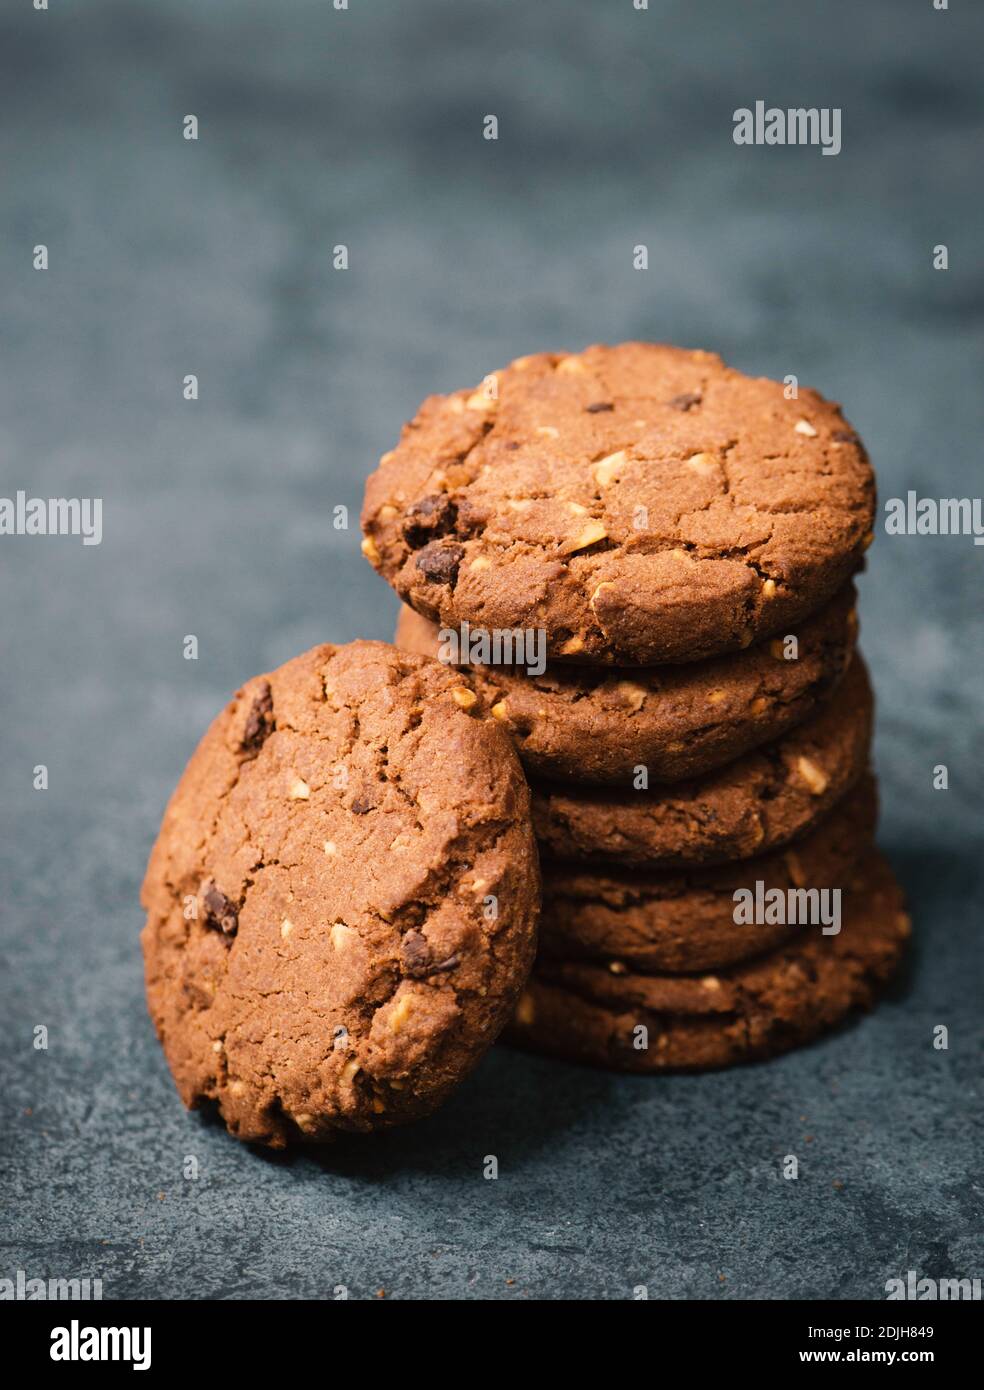 Biscotti con nocciole e cioccolato, caramelle a moody scura, spazio vuoto per la copia del testo Foto Stock